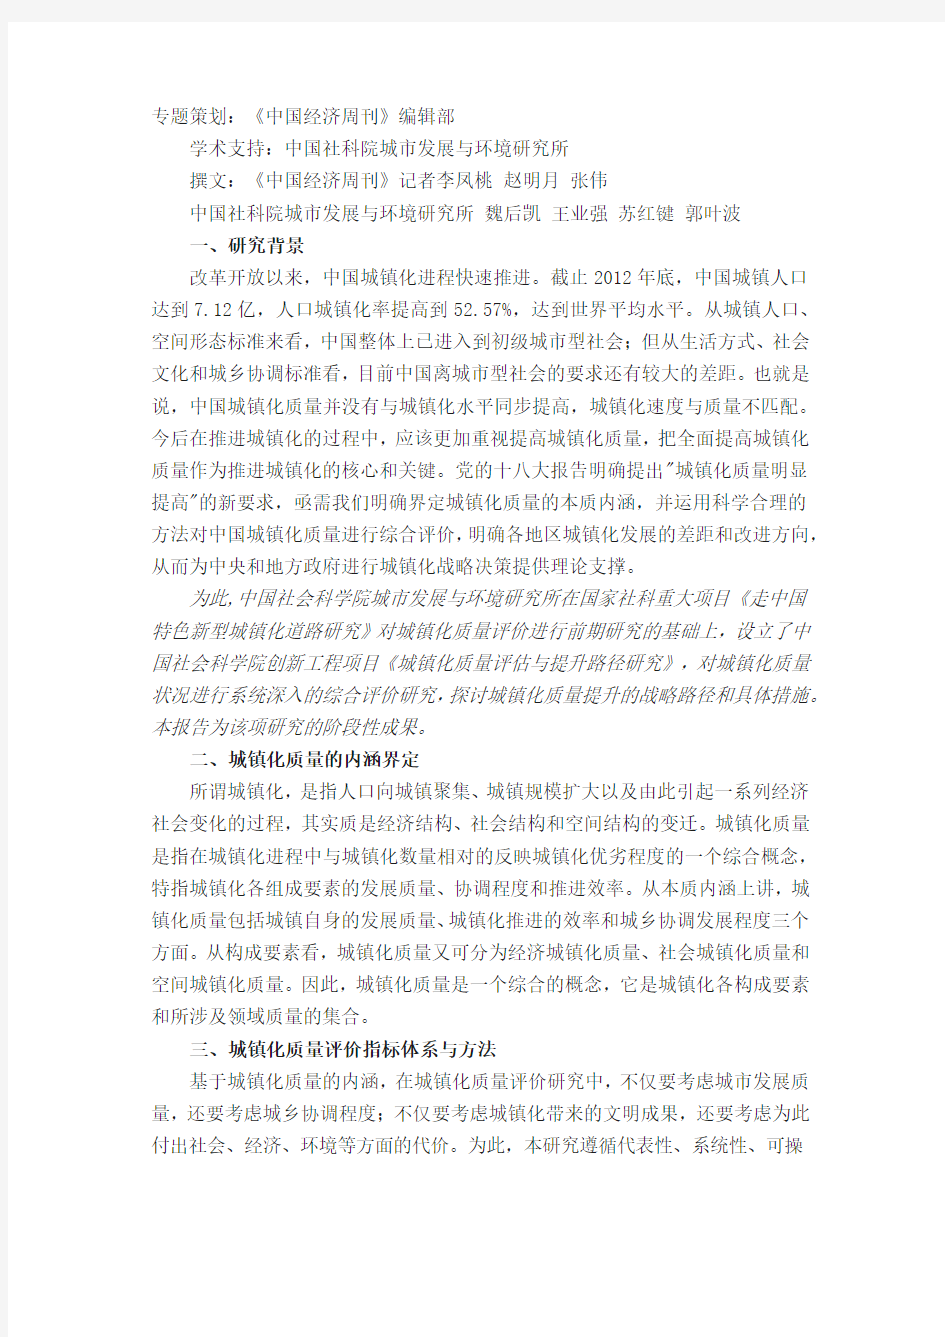 中国城镇化质量报告(全文)